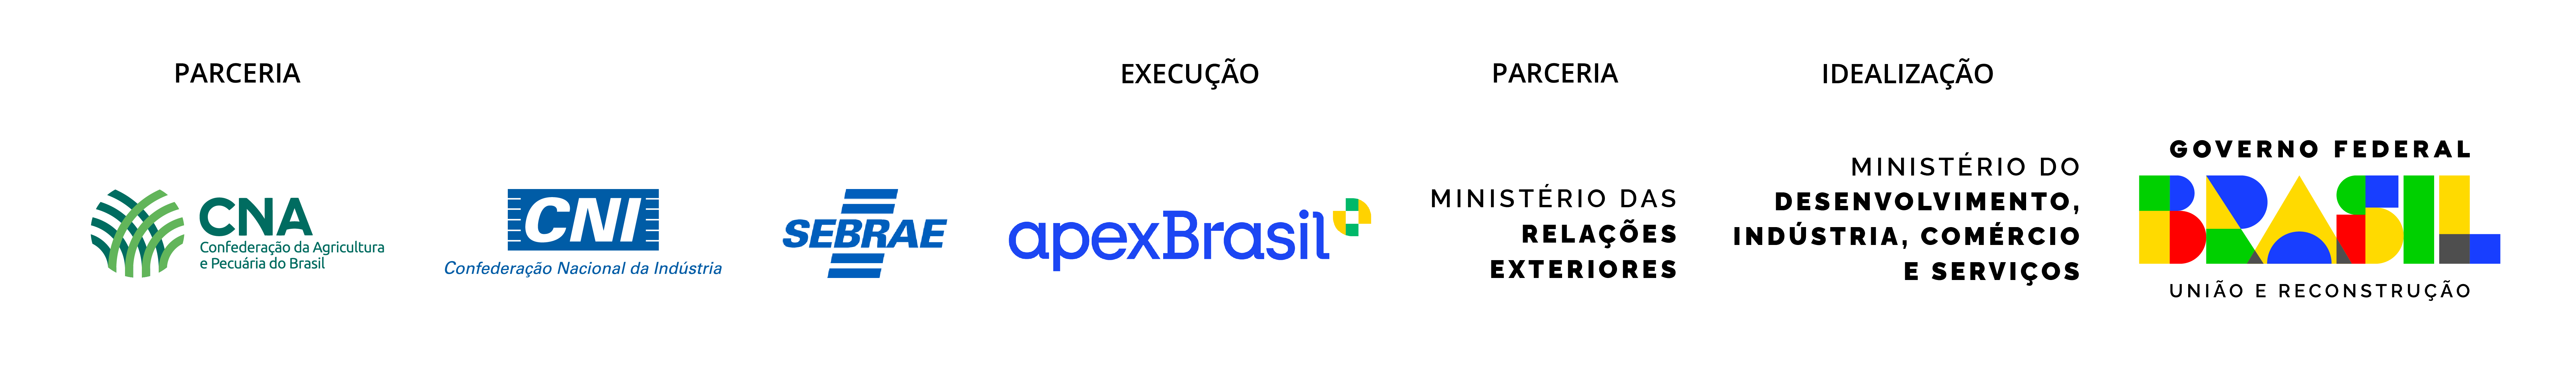 Logomarcas: Execução - ApexBrasil - Parceria: Confederação da Agricultura e Pecuária do Brasil, Confederação Nacional de Indústria, Sebrae e Ministério das Relações Exteriores, Idealização: Ministério do Desenvolvimento, Indústria, Comércio e Serviços